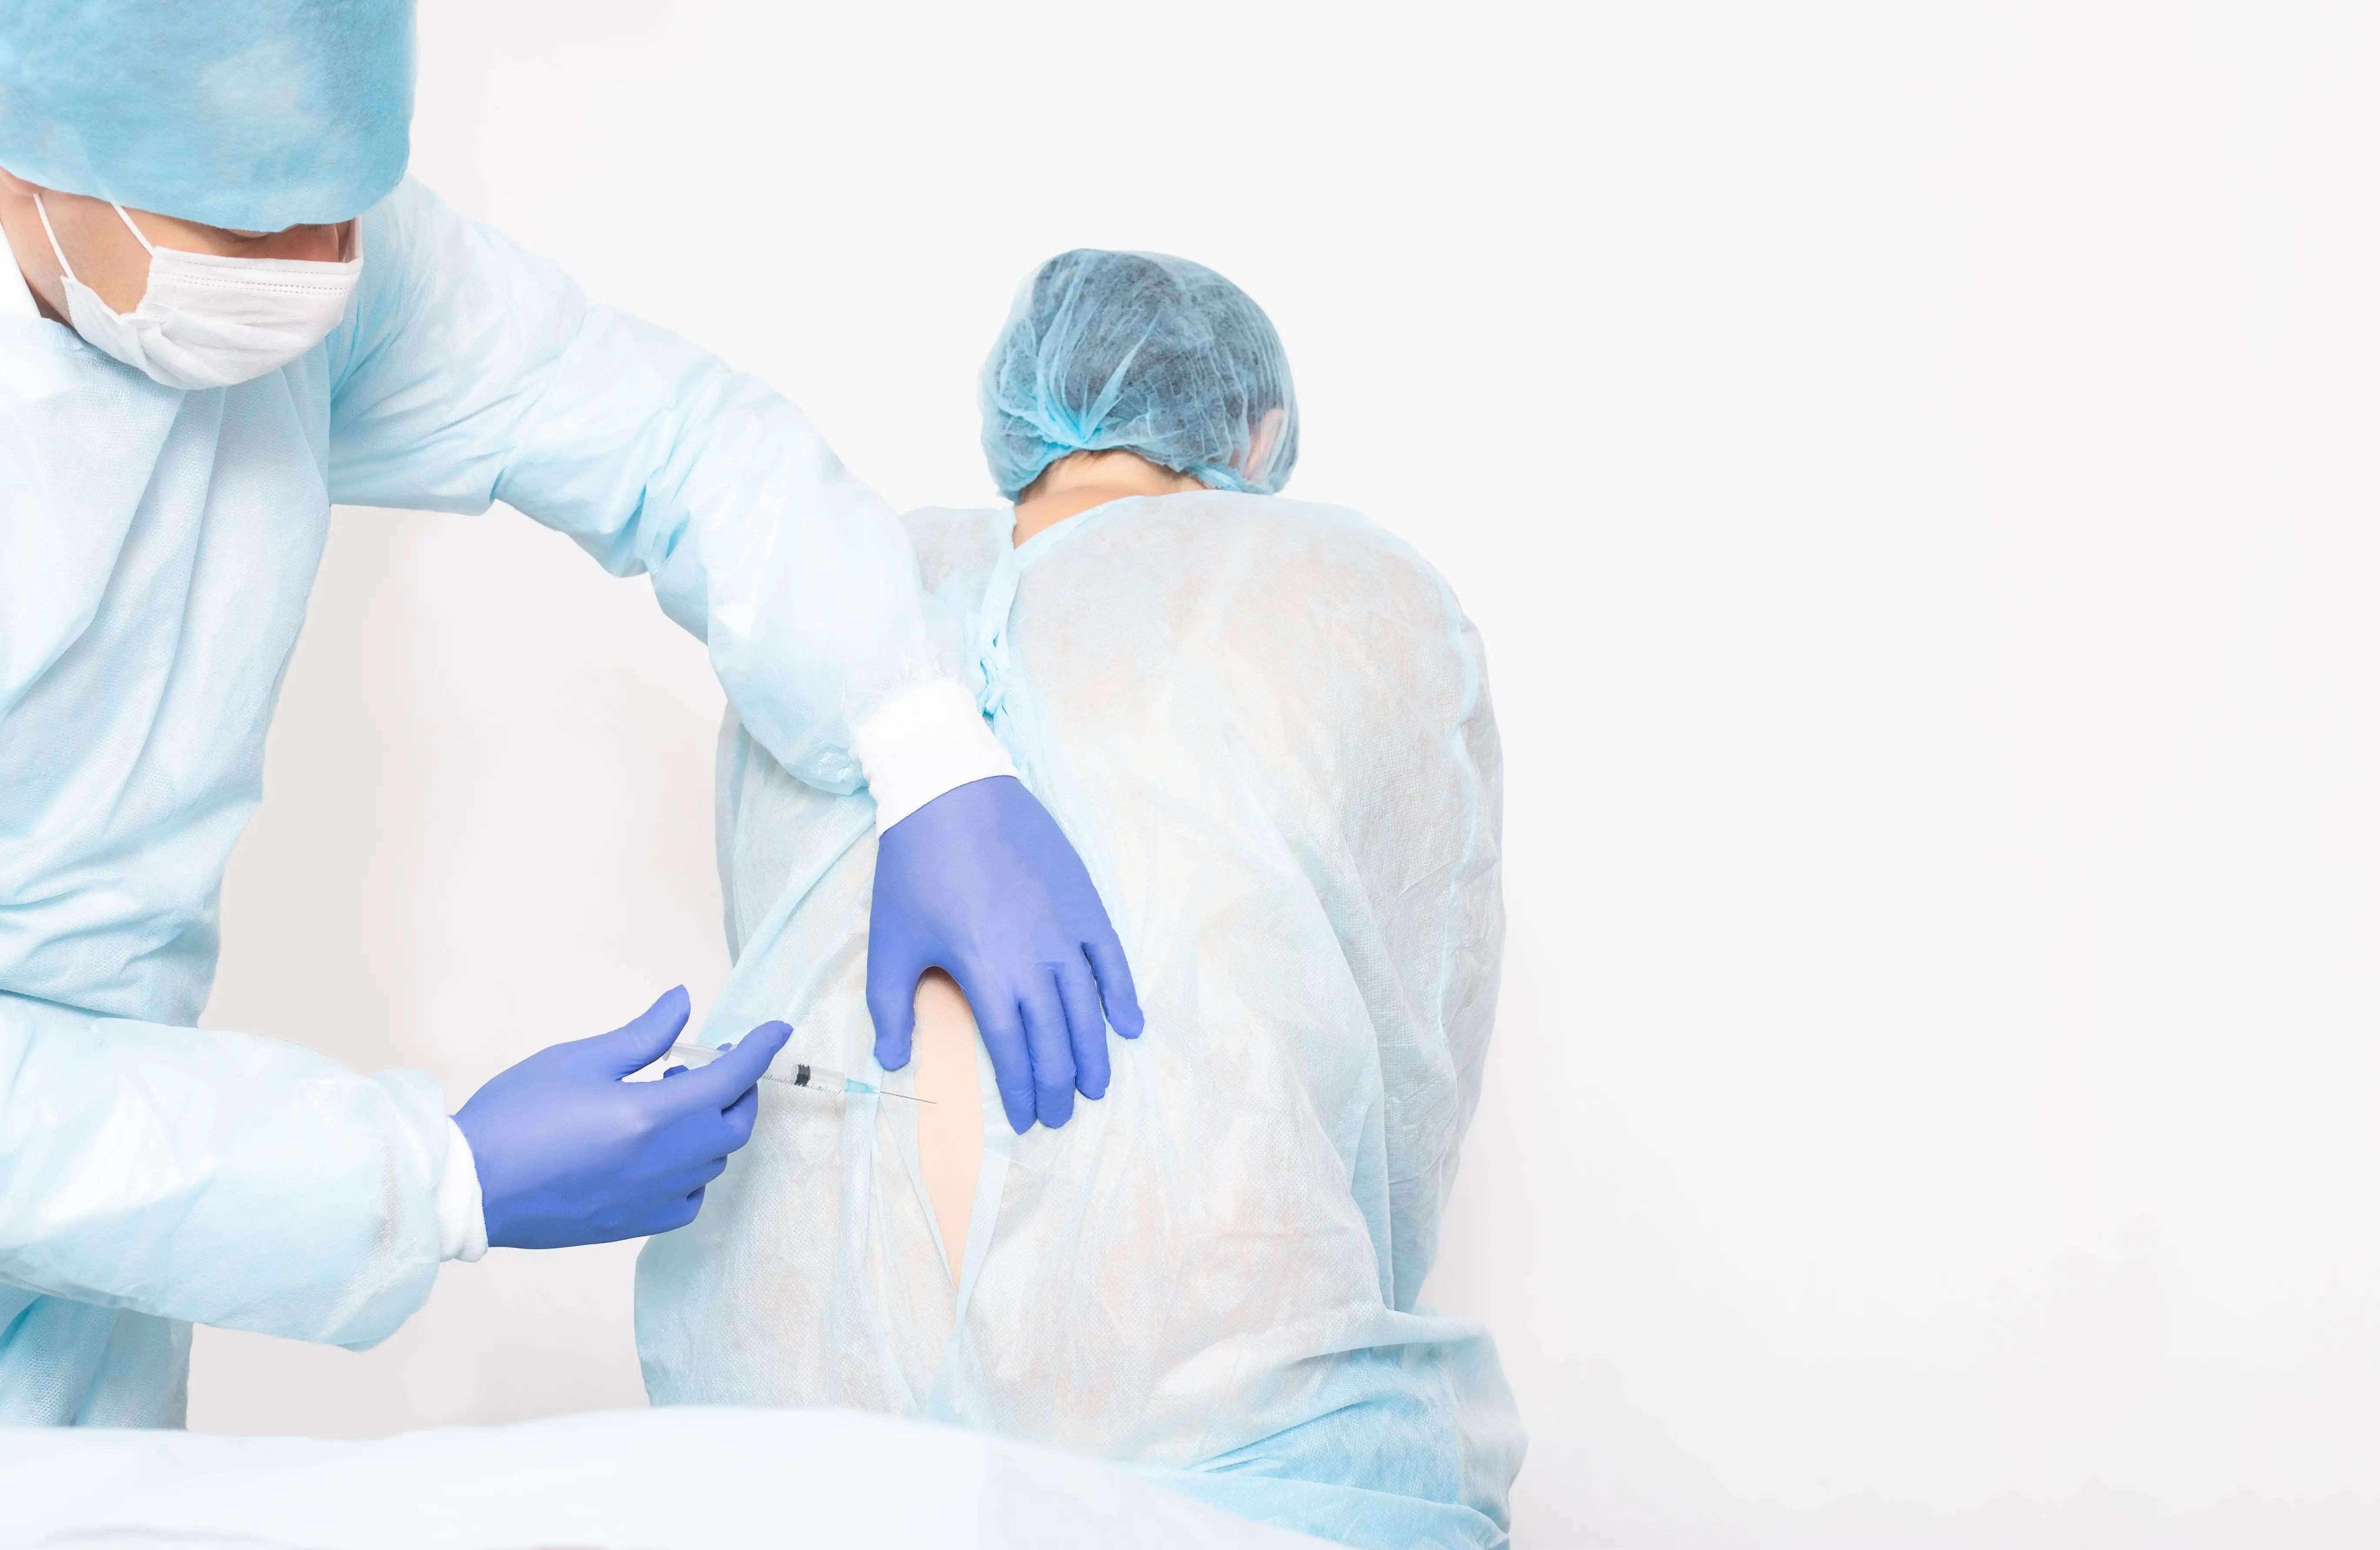 epidural vs. intravenous labor analgesia